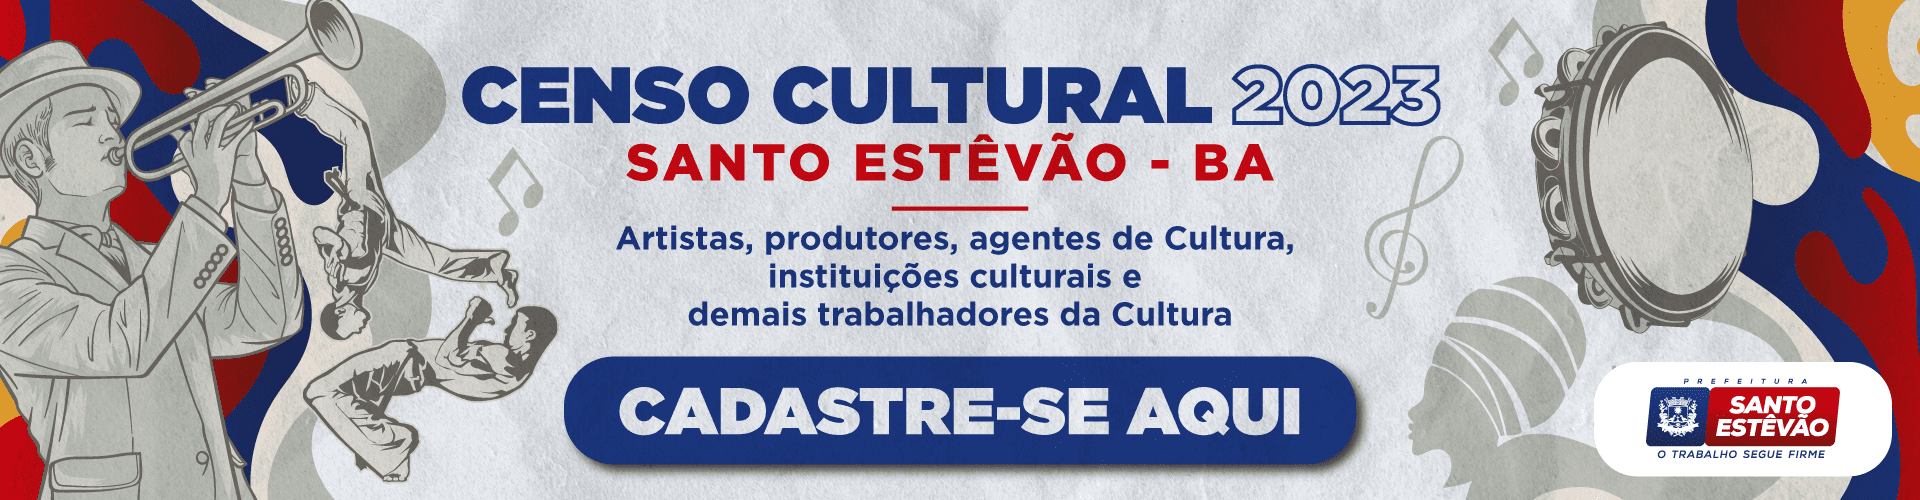 CEnso Cultura